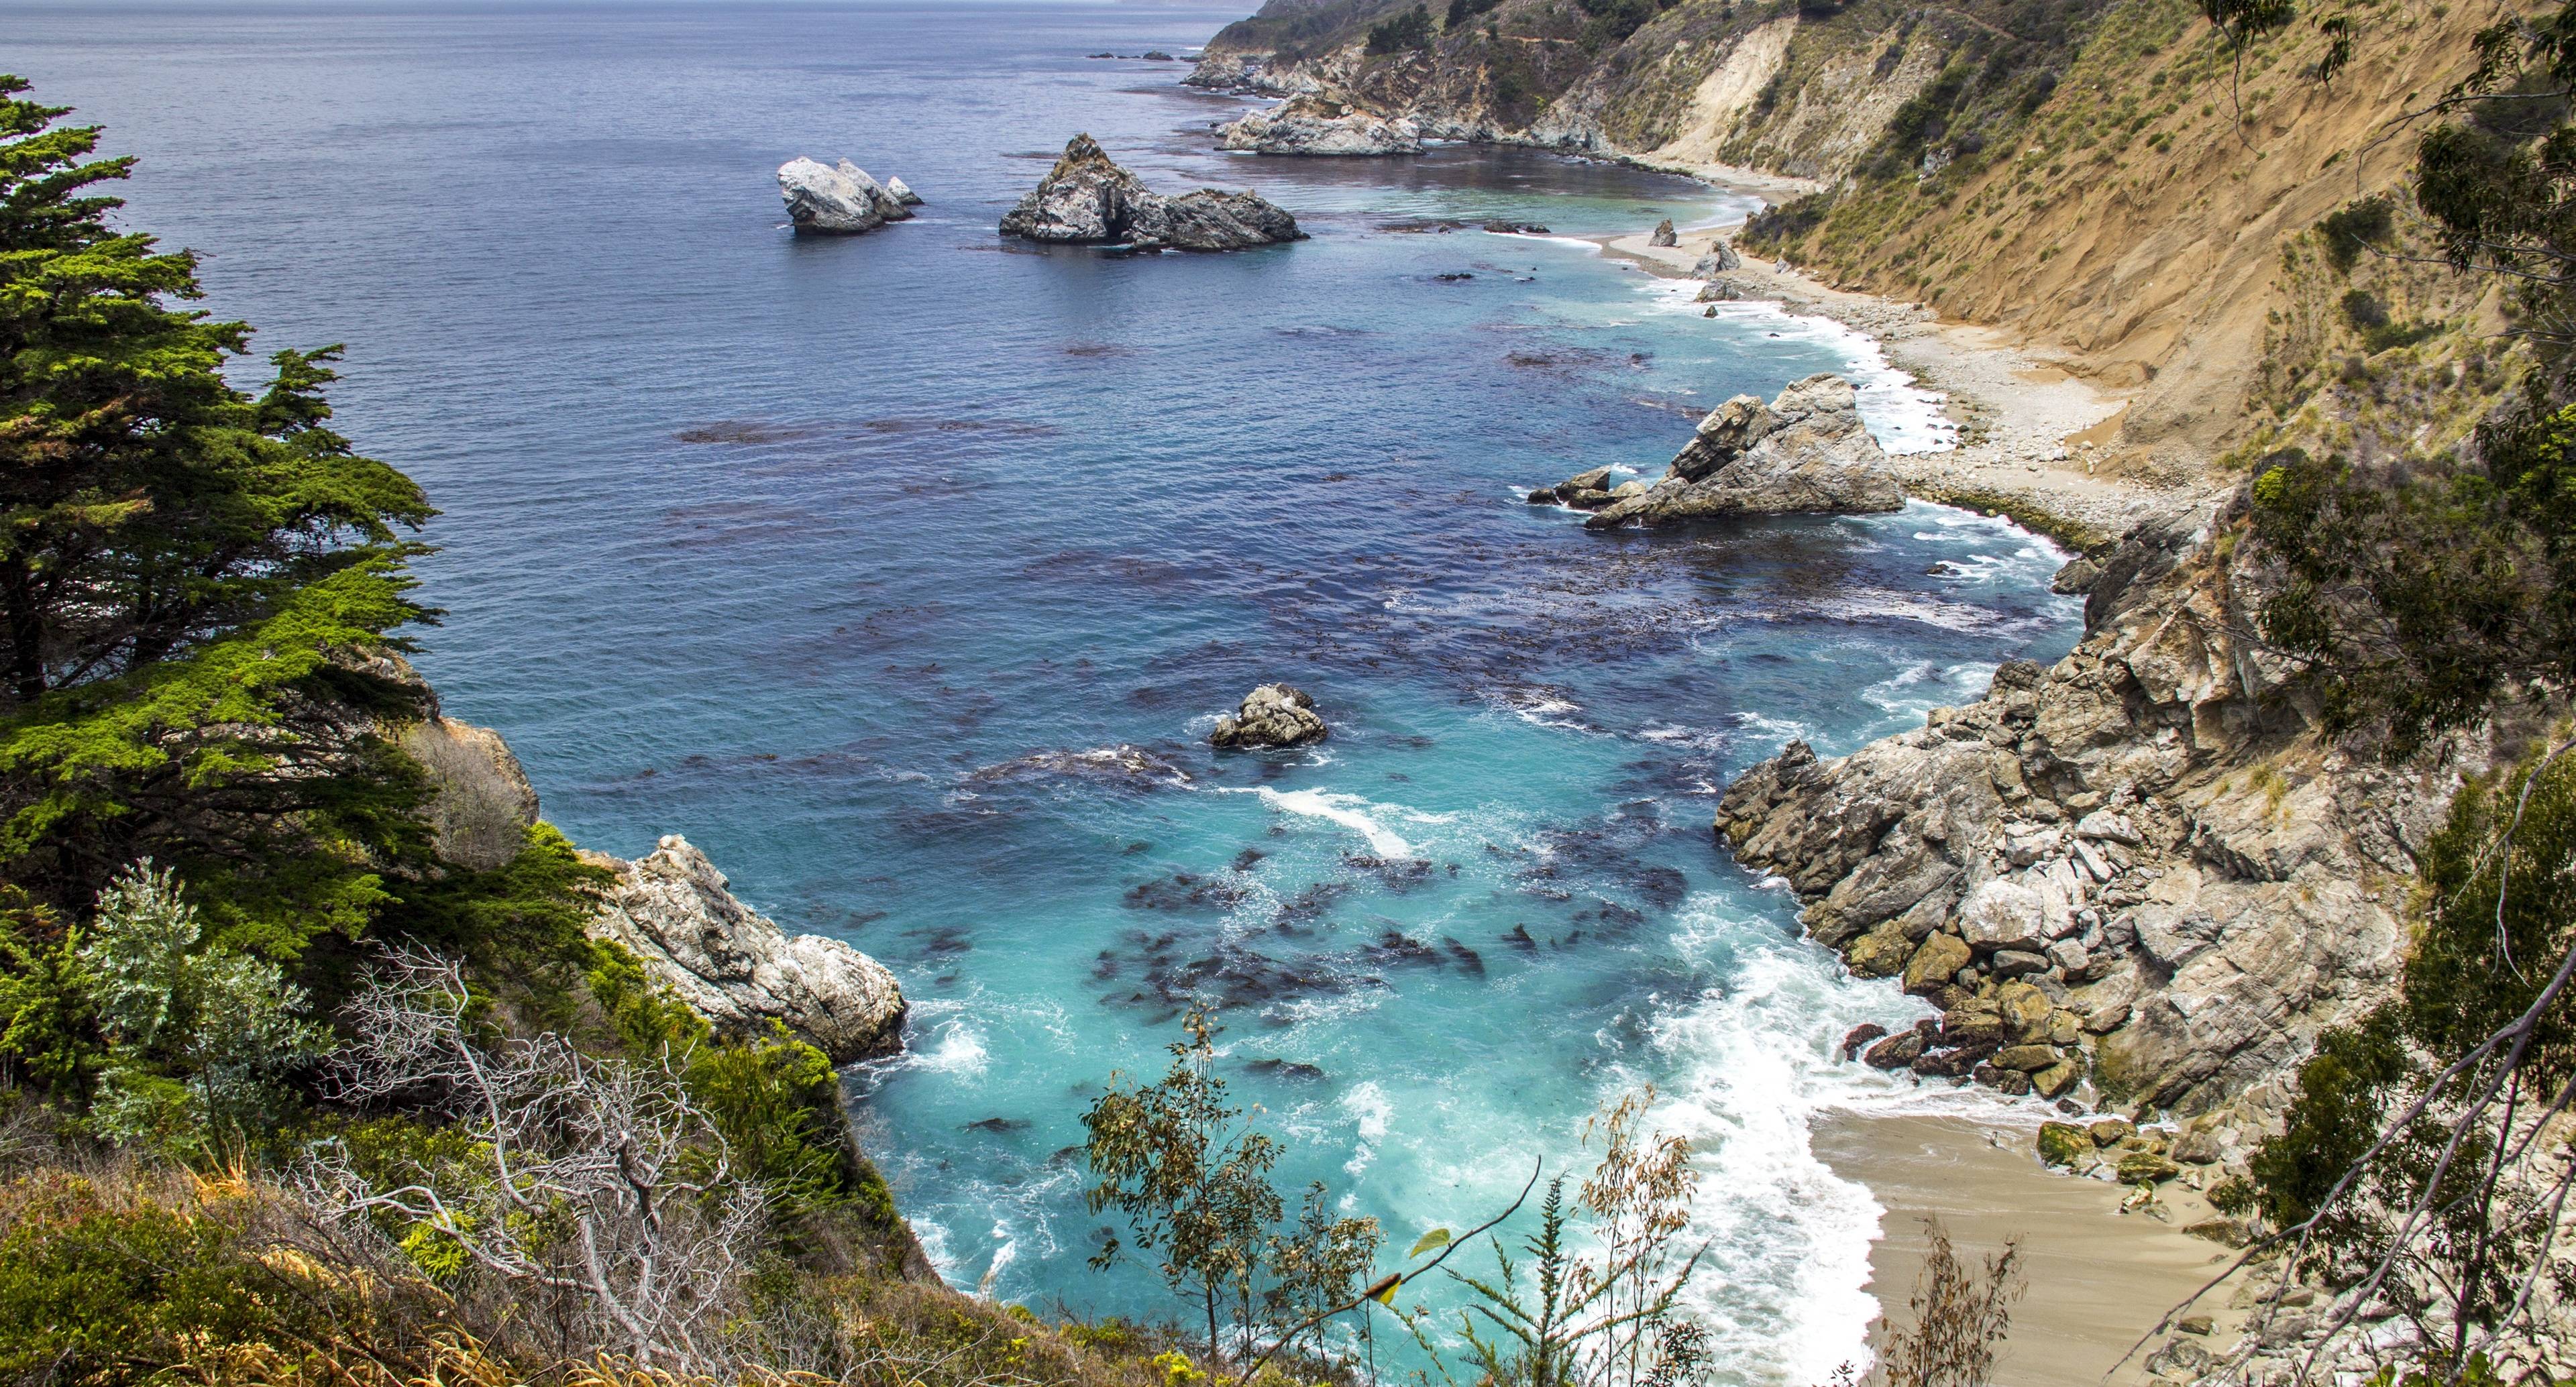 Savourez le littoral magnifique et sauvage de la Californie